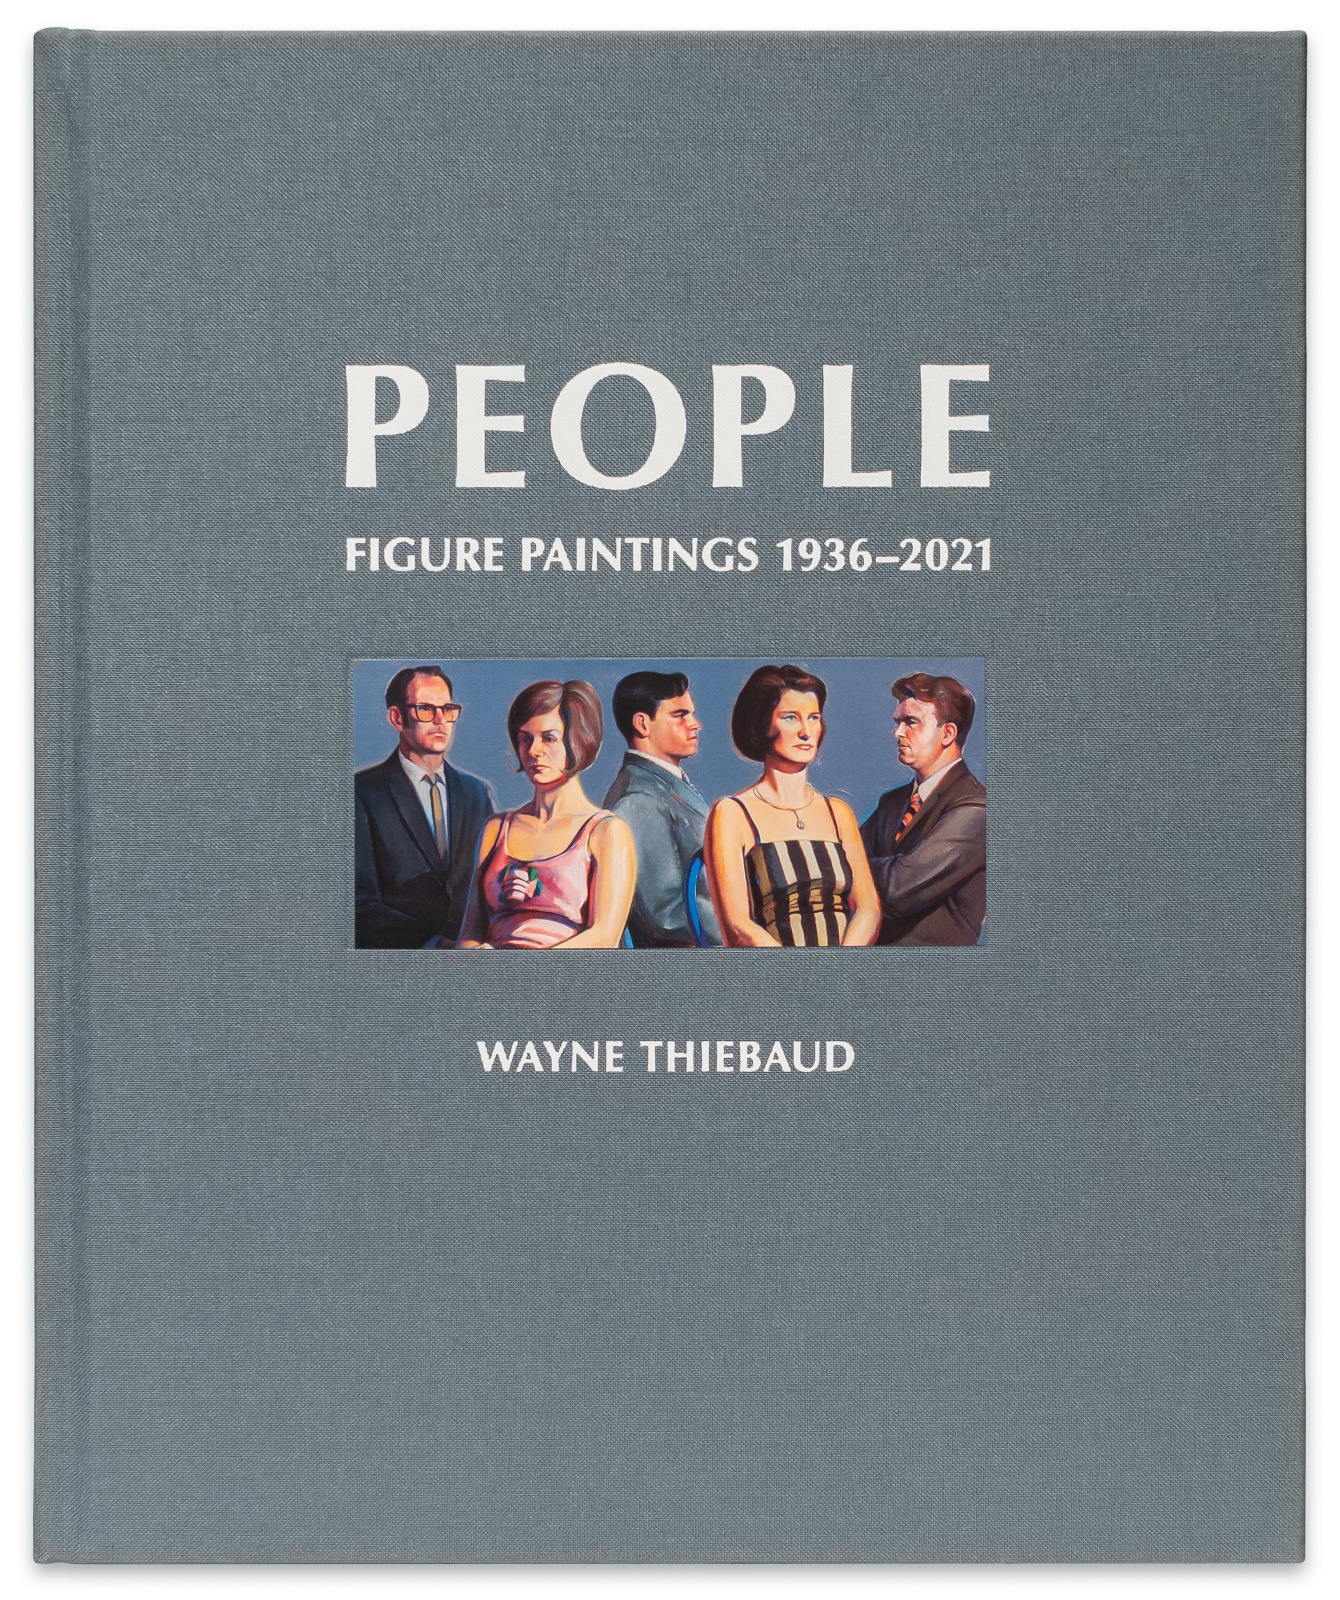 Wayne Thiebaud: People - Figure Paintings 1936-2021 - Publications - Paul Thiebaud Gallery